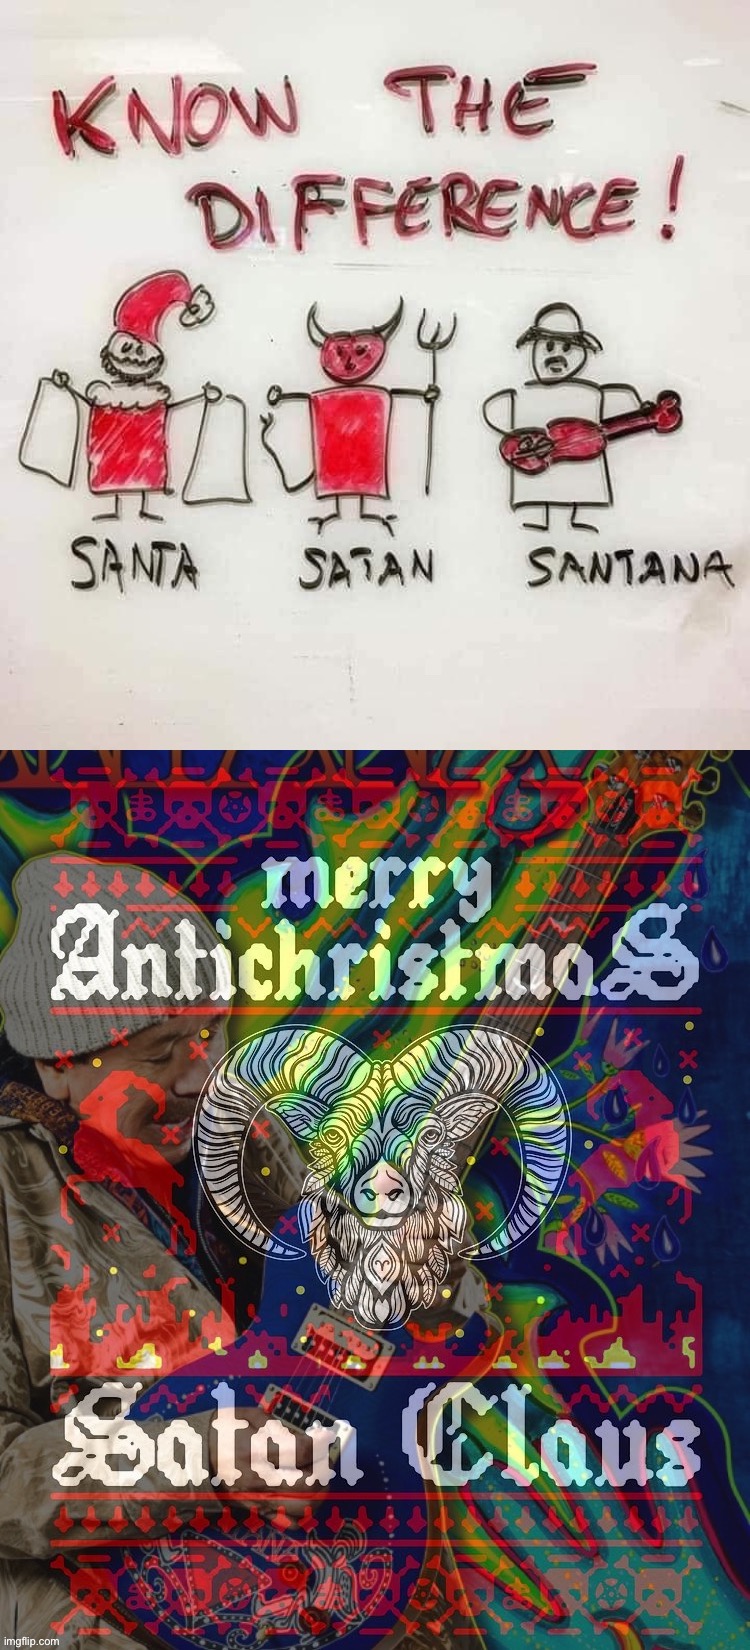 No they are the same person Carlos Satanta | image tagged in know the difference santa satan santana,santa satan santana | made w/ Imgflip meme maker